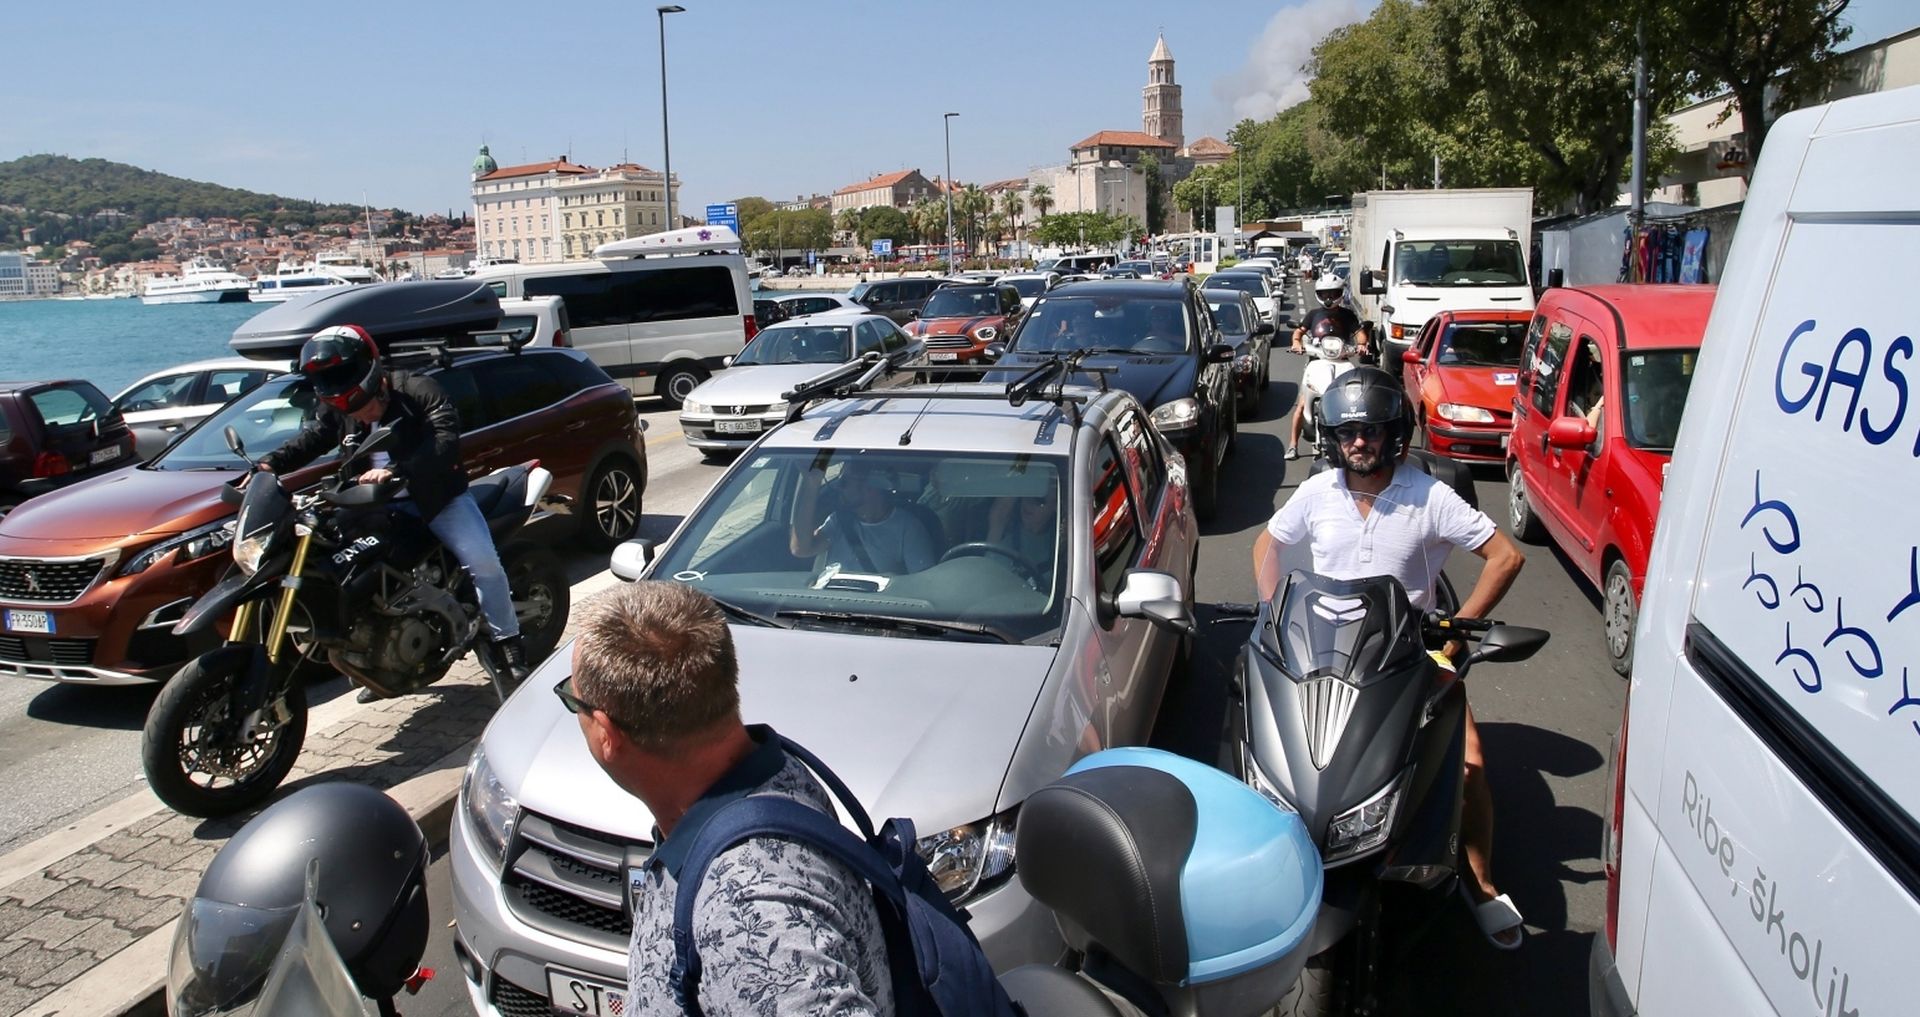 03.08.2020., Split - Blokada prometa u gradskoj luci prosle je godine bila svakodnevnica. Danas je nastala djelomicno zbog pozara na rivi. Photo: Ivo Cagalj/PIXSELL